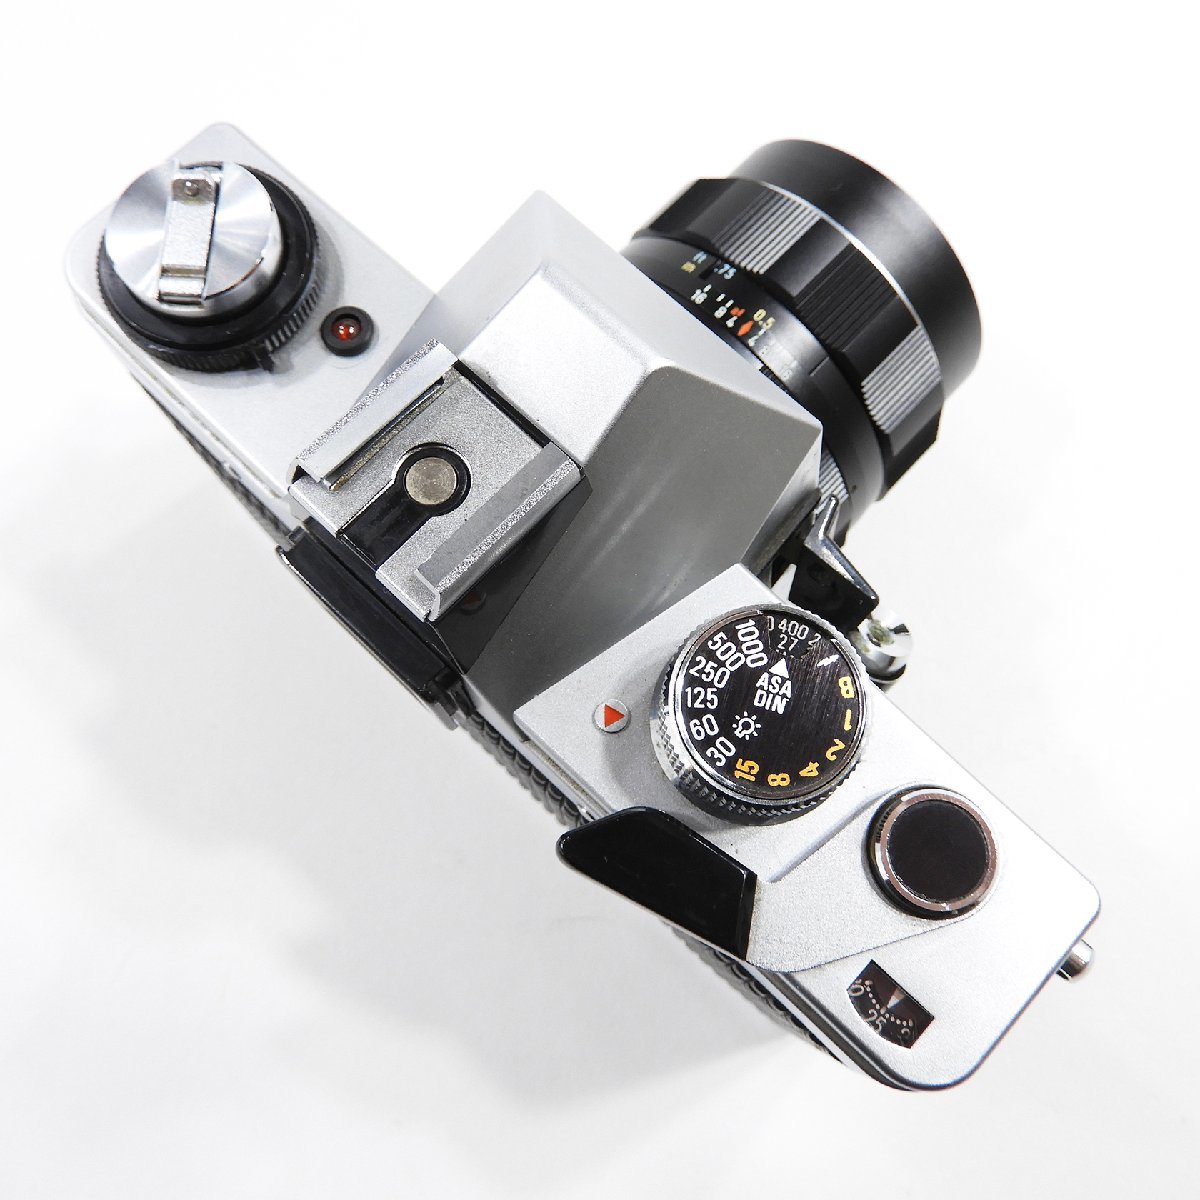 PRAKTICA DTL3 タクマー 55mm 一眼レフ フィルムカメラ #13947 レンズセット オールド 昭和 コレクションの画像4